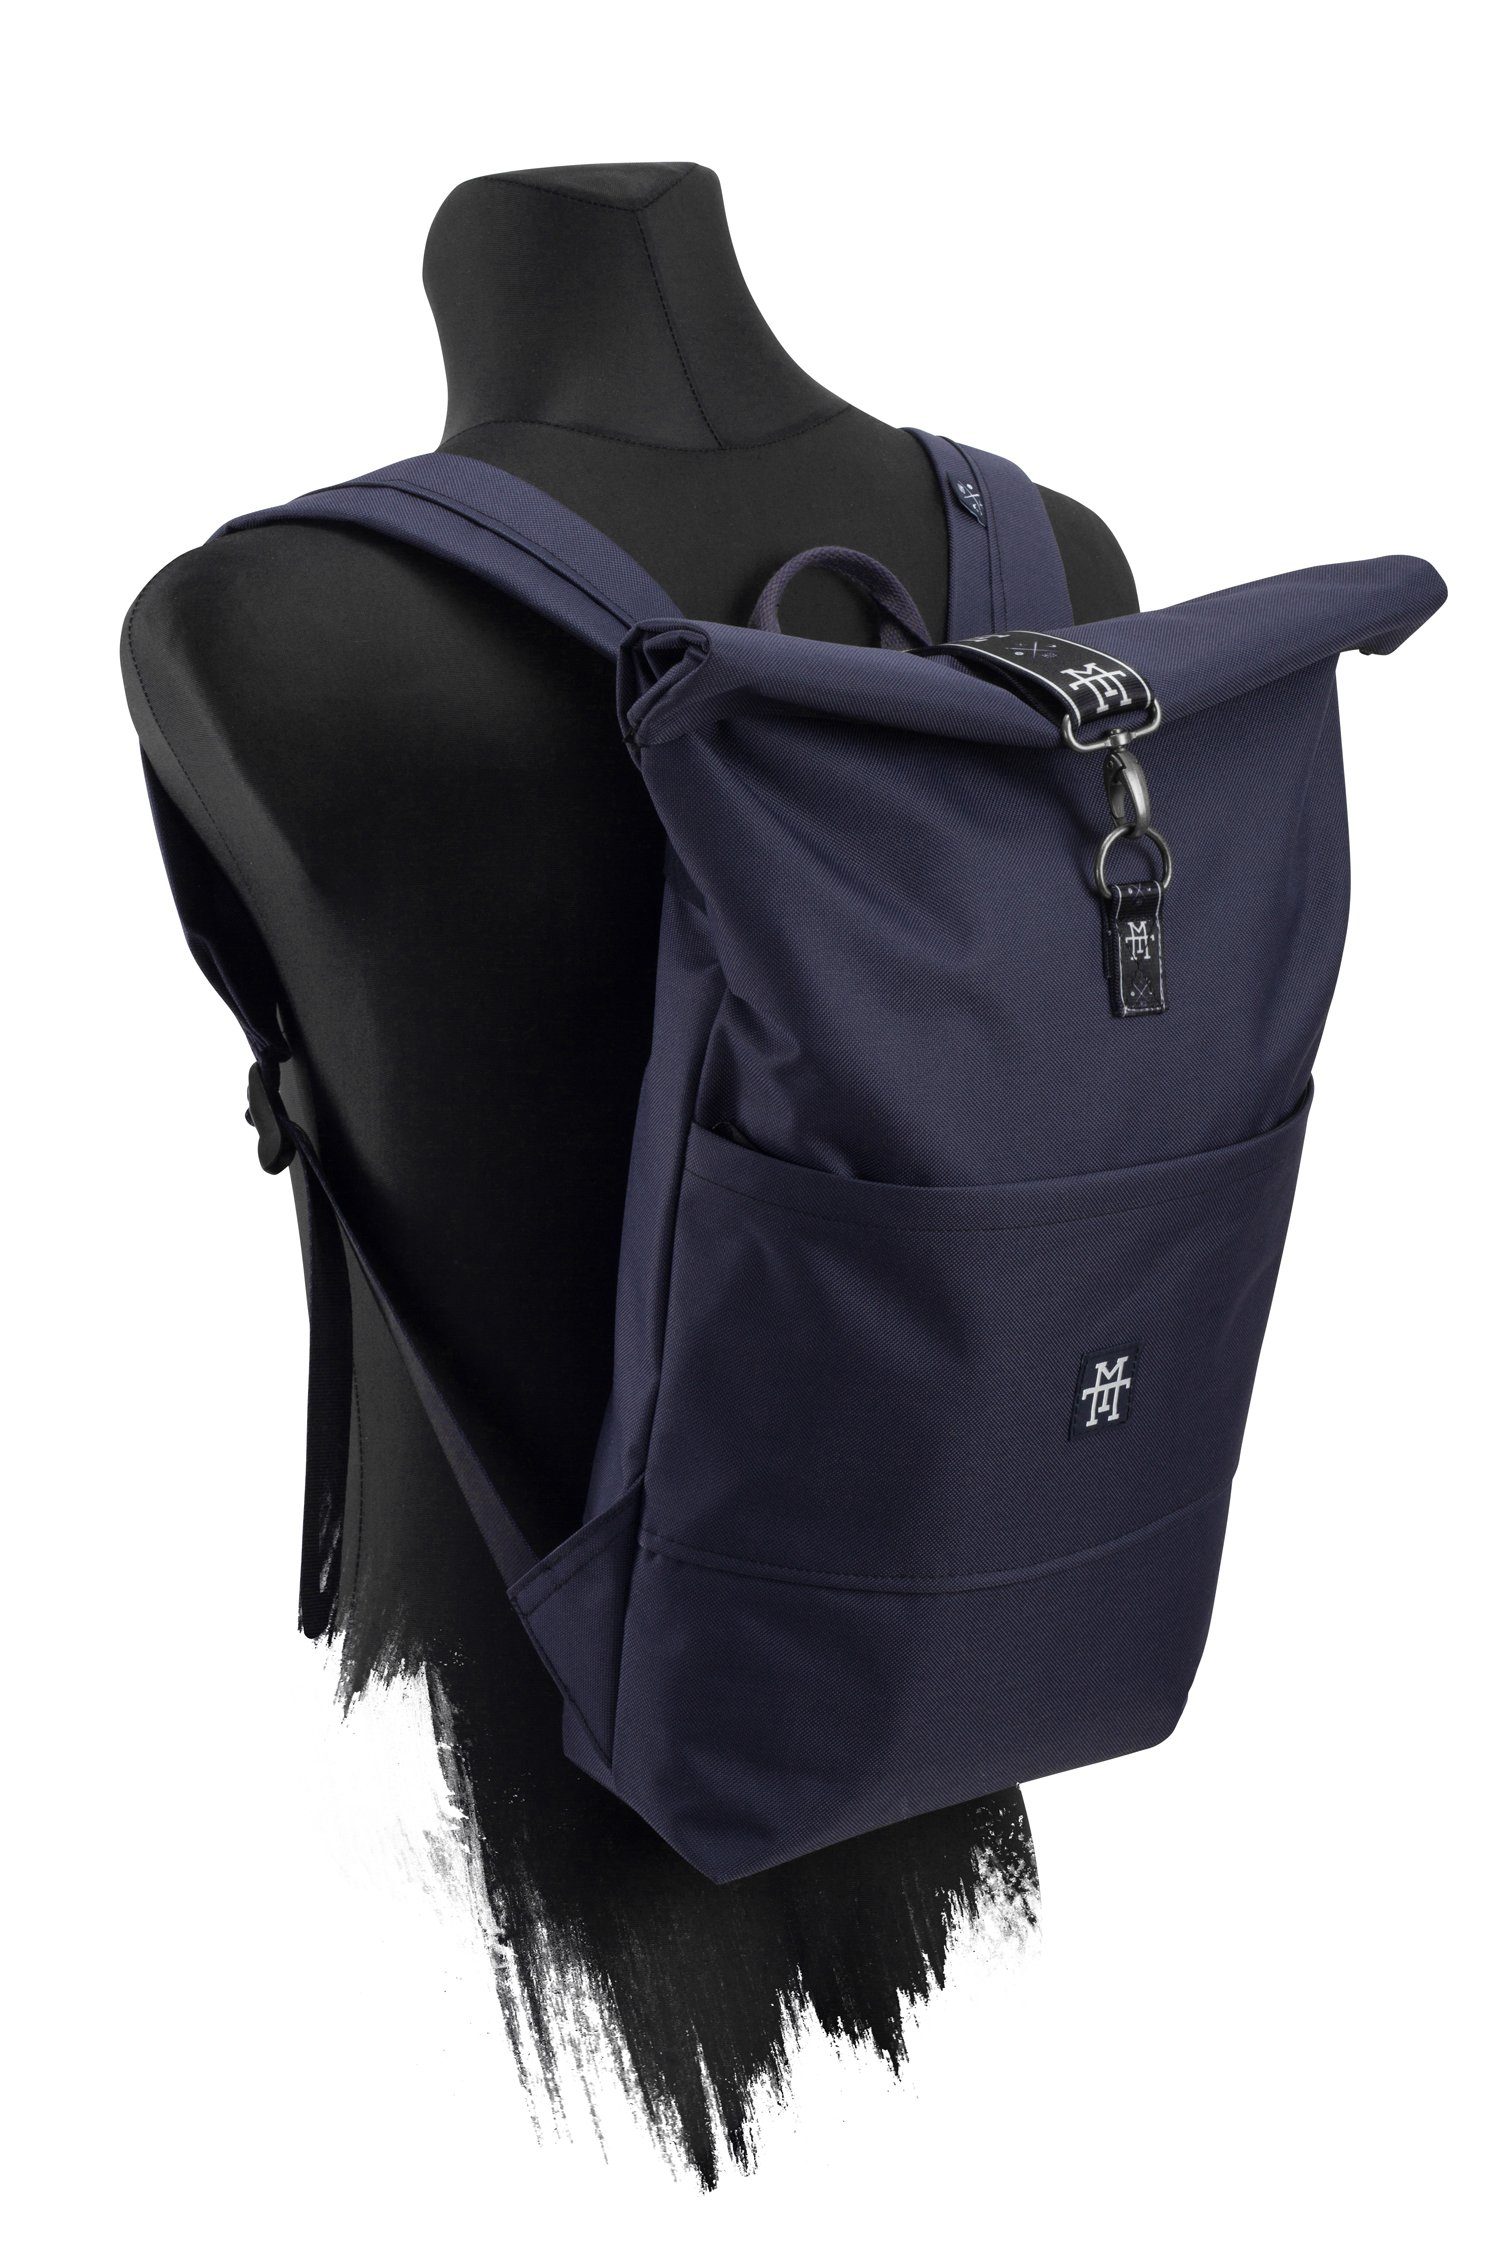 Manufaktur13 Tagesrucksack Roll-Top Backpack - verstellbare Edition Navy Rucksack Rollverschluss, Gurte wasserdicht/wasserabweisend, mit Taped